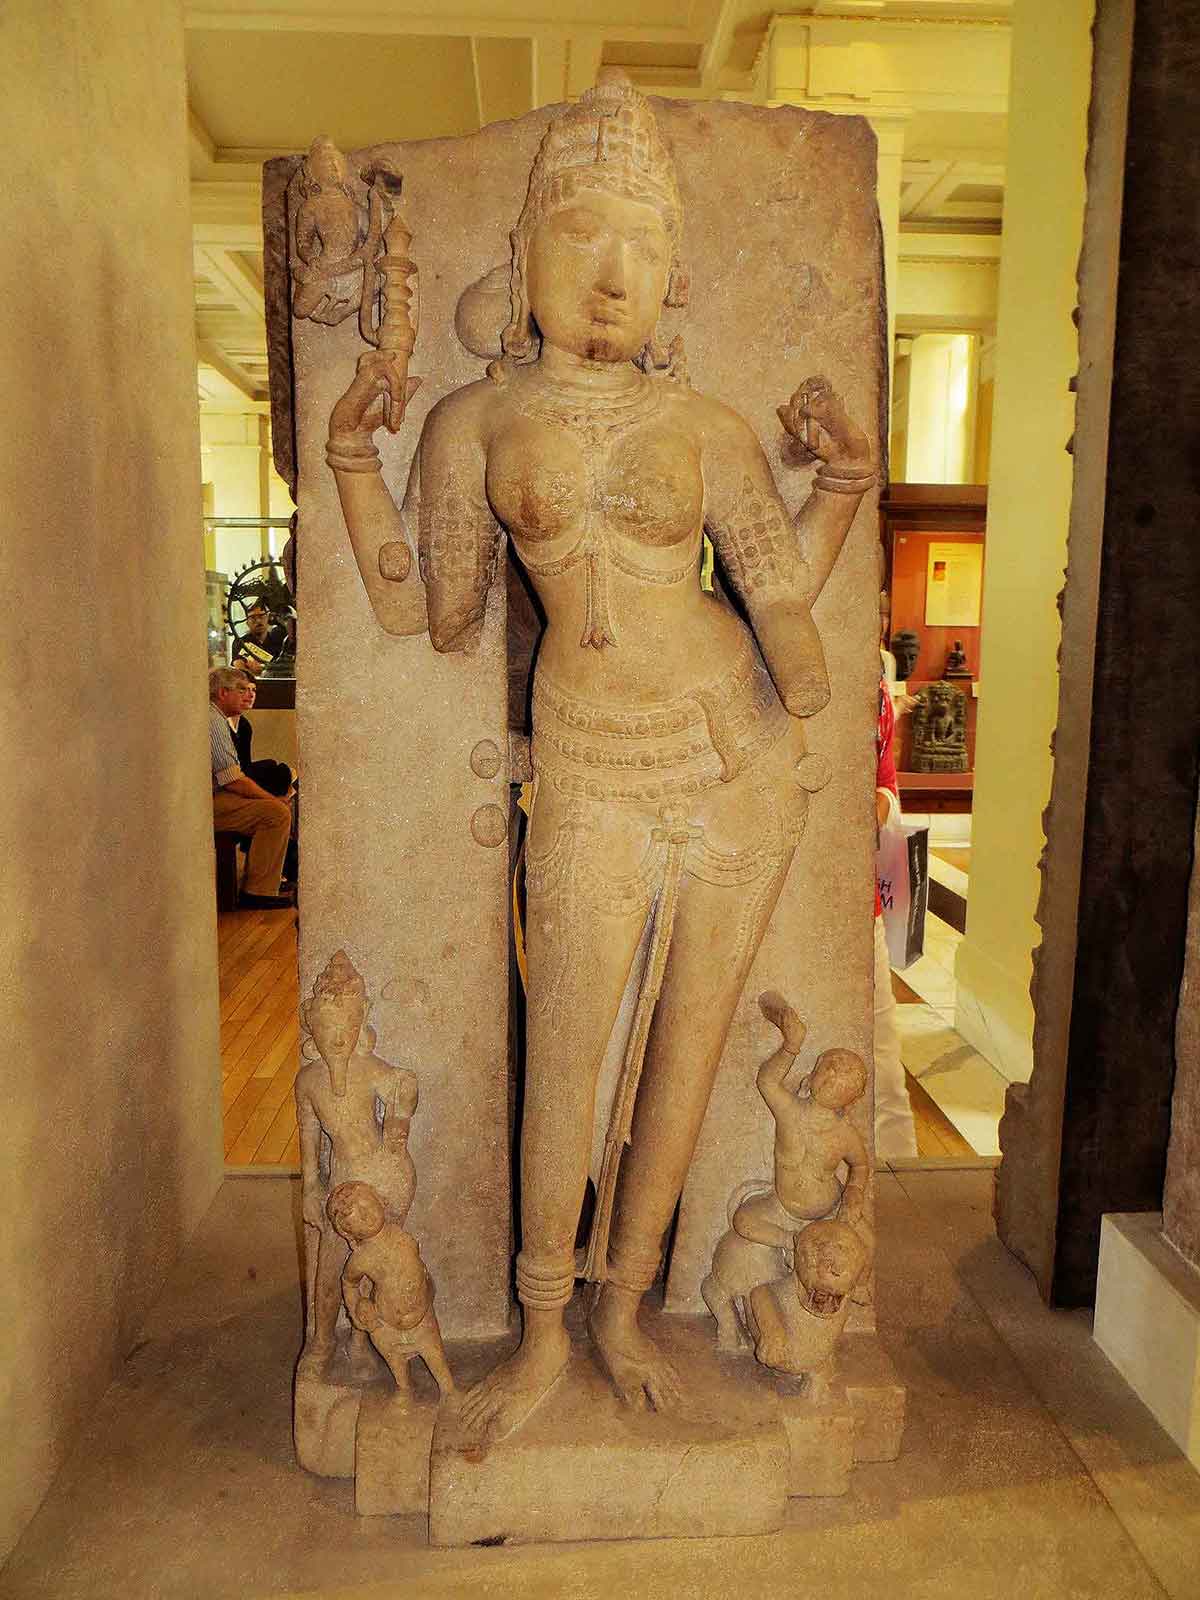 Saraswati idol from Bhojshala, currently in London